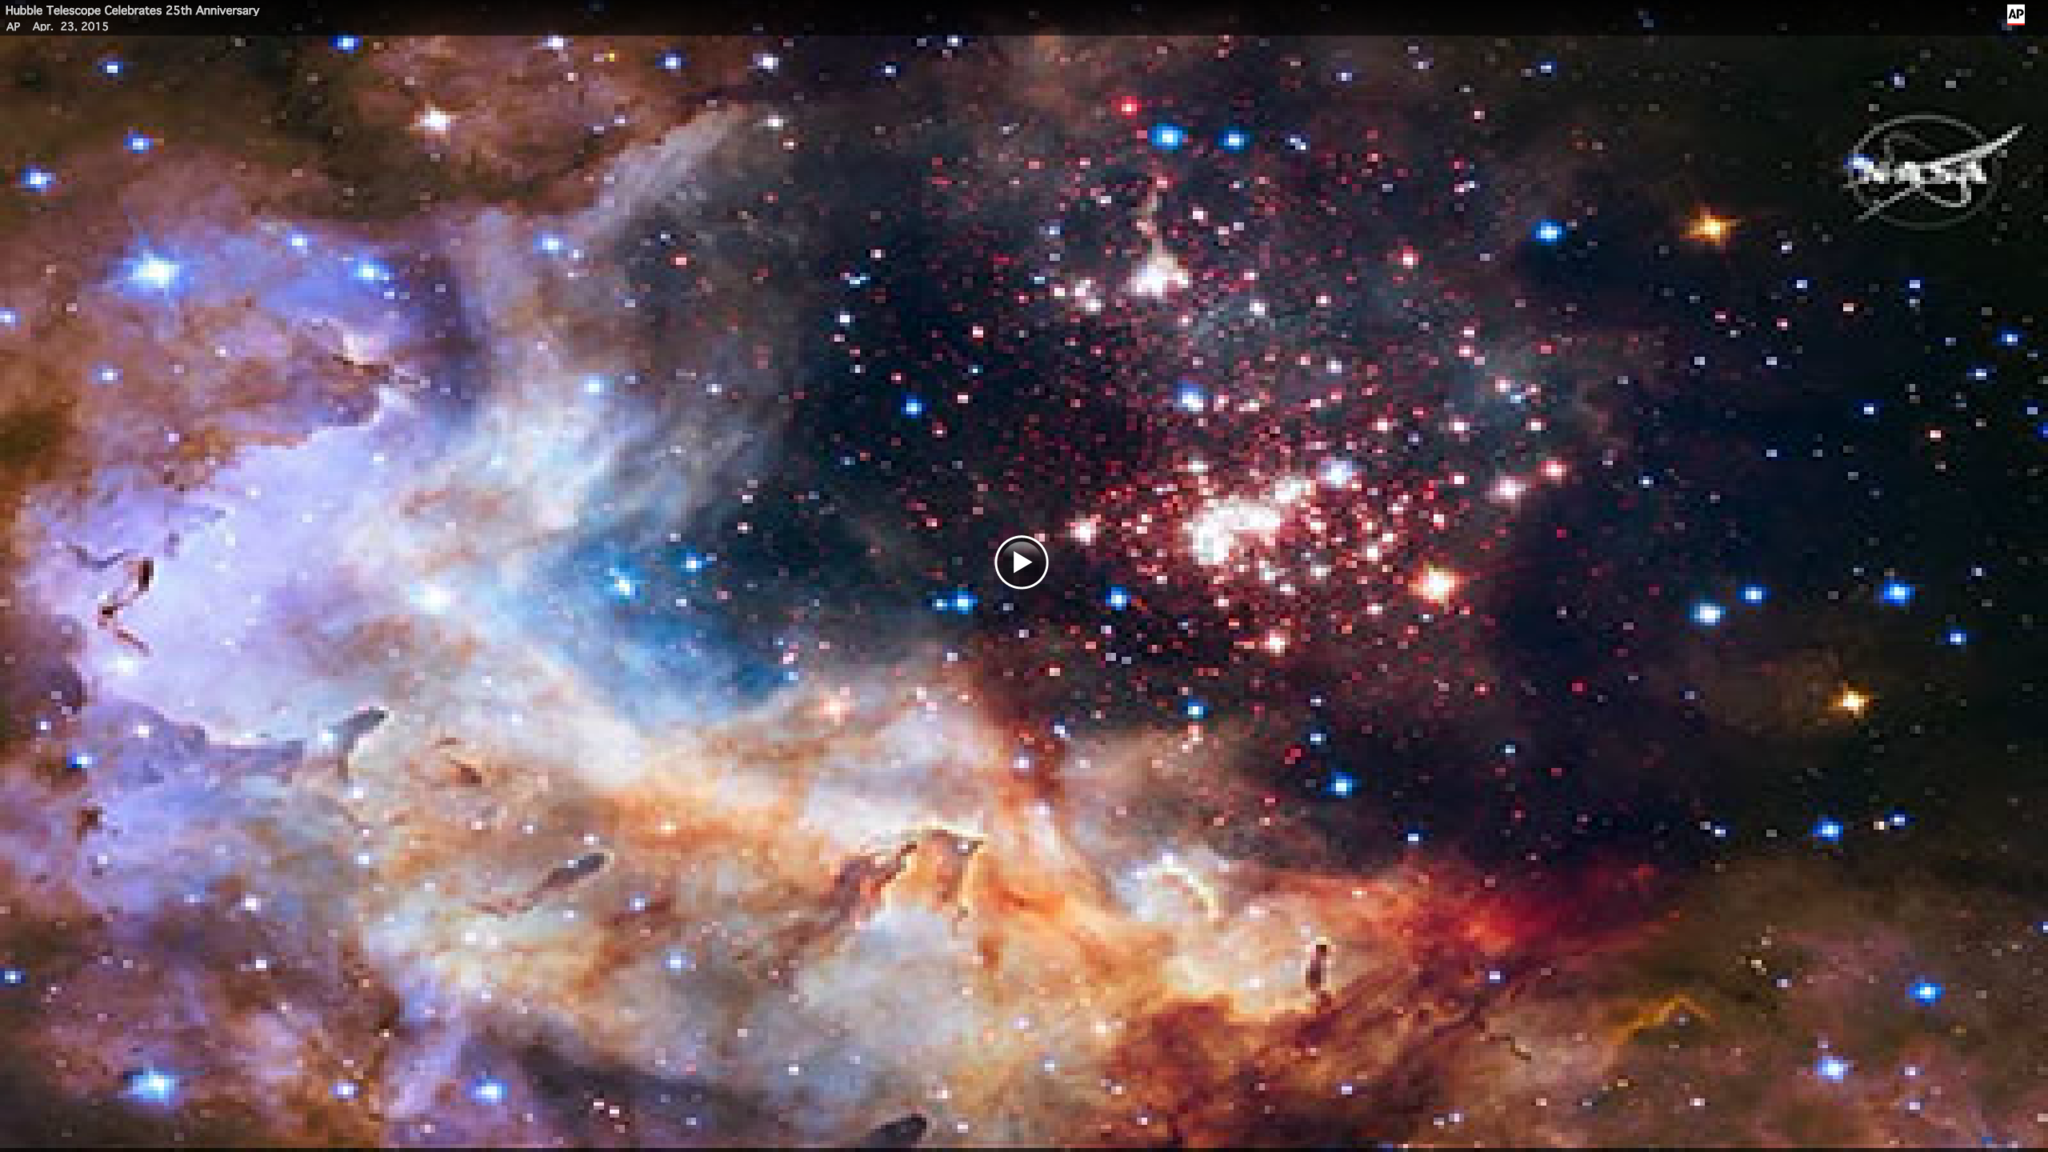 Hubble Telescope celebrates 25th anniversary - Baltimore Sun